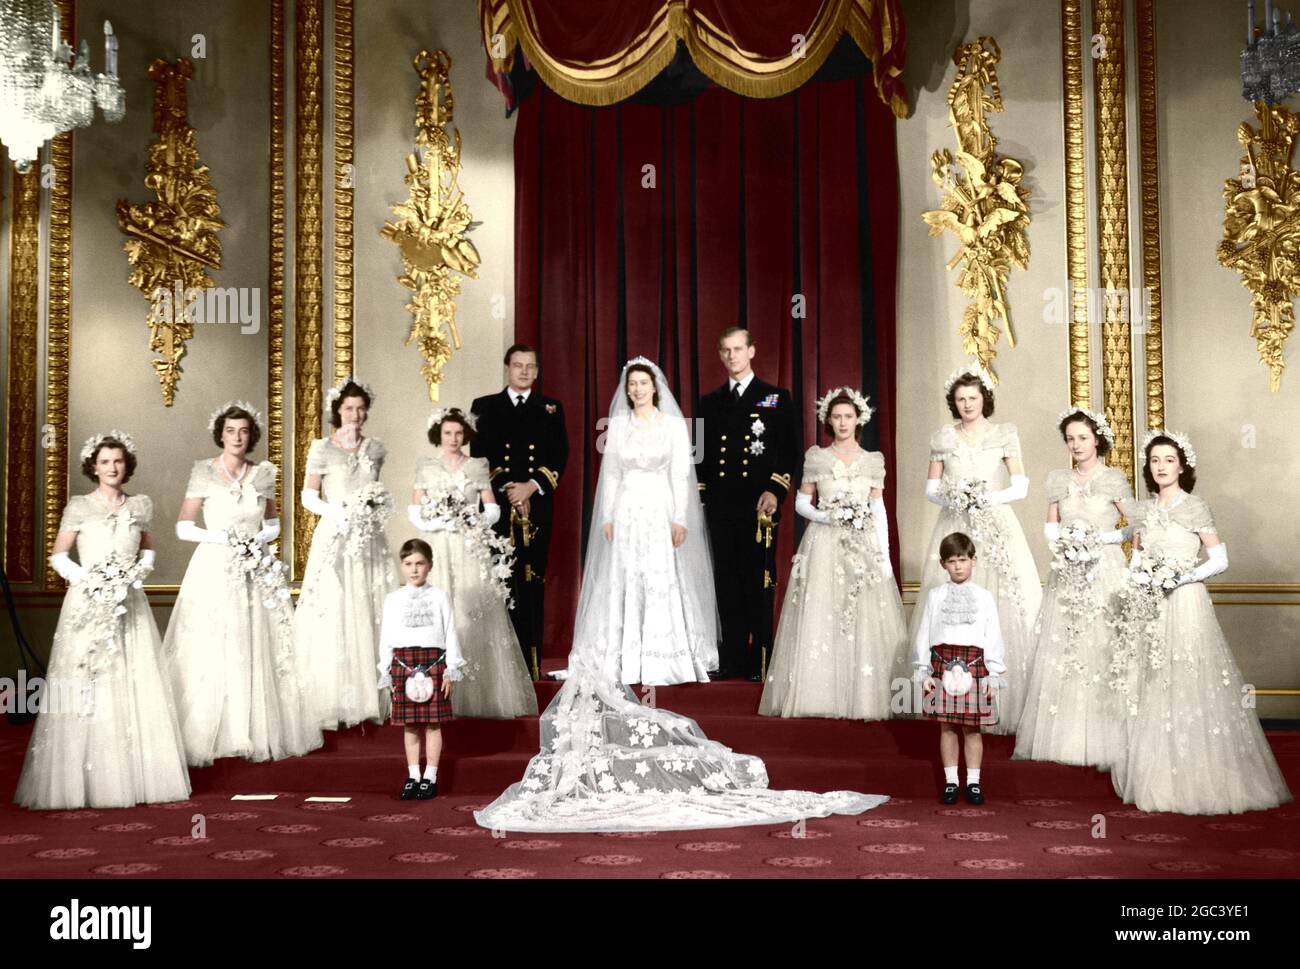 Königliche Hochzeit. Ihre Königliche Hoheit Prinzessin Elizabeth und Herzog von Edinburgh. Das Brautpaar mit Brautjungfern. 20. November 1947 Farbbild von TopFoto Production Stockfoto